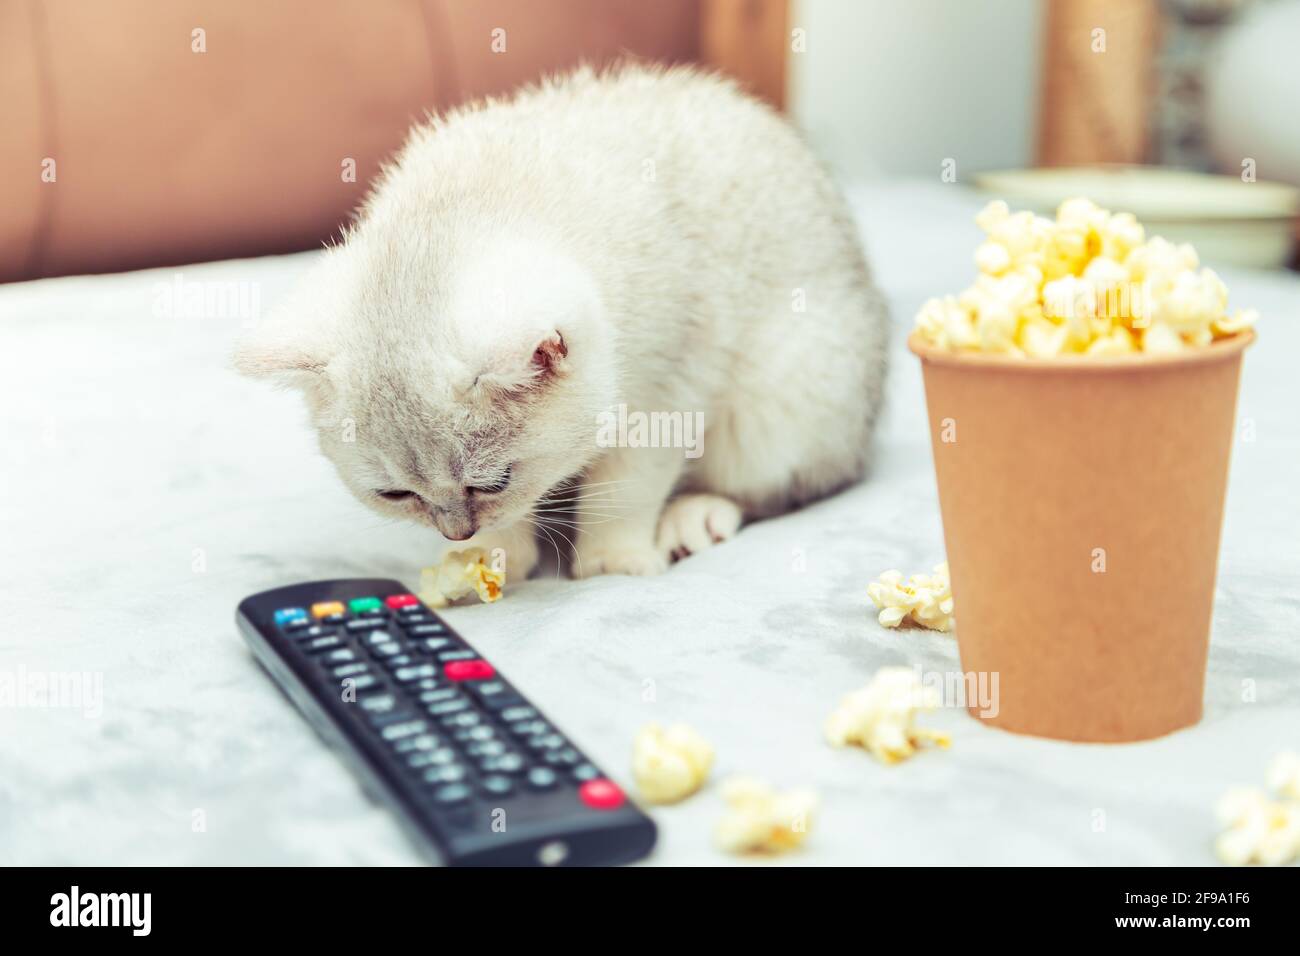 Le chaton britannique blanc se trouve sur le lit avec une télécommande et du pop-corn. Visionnage de films classiques. Banque D'Images